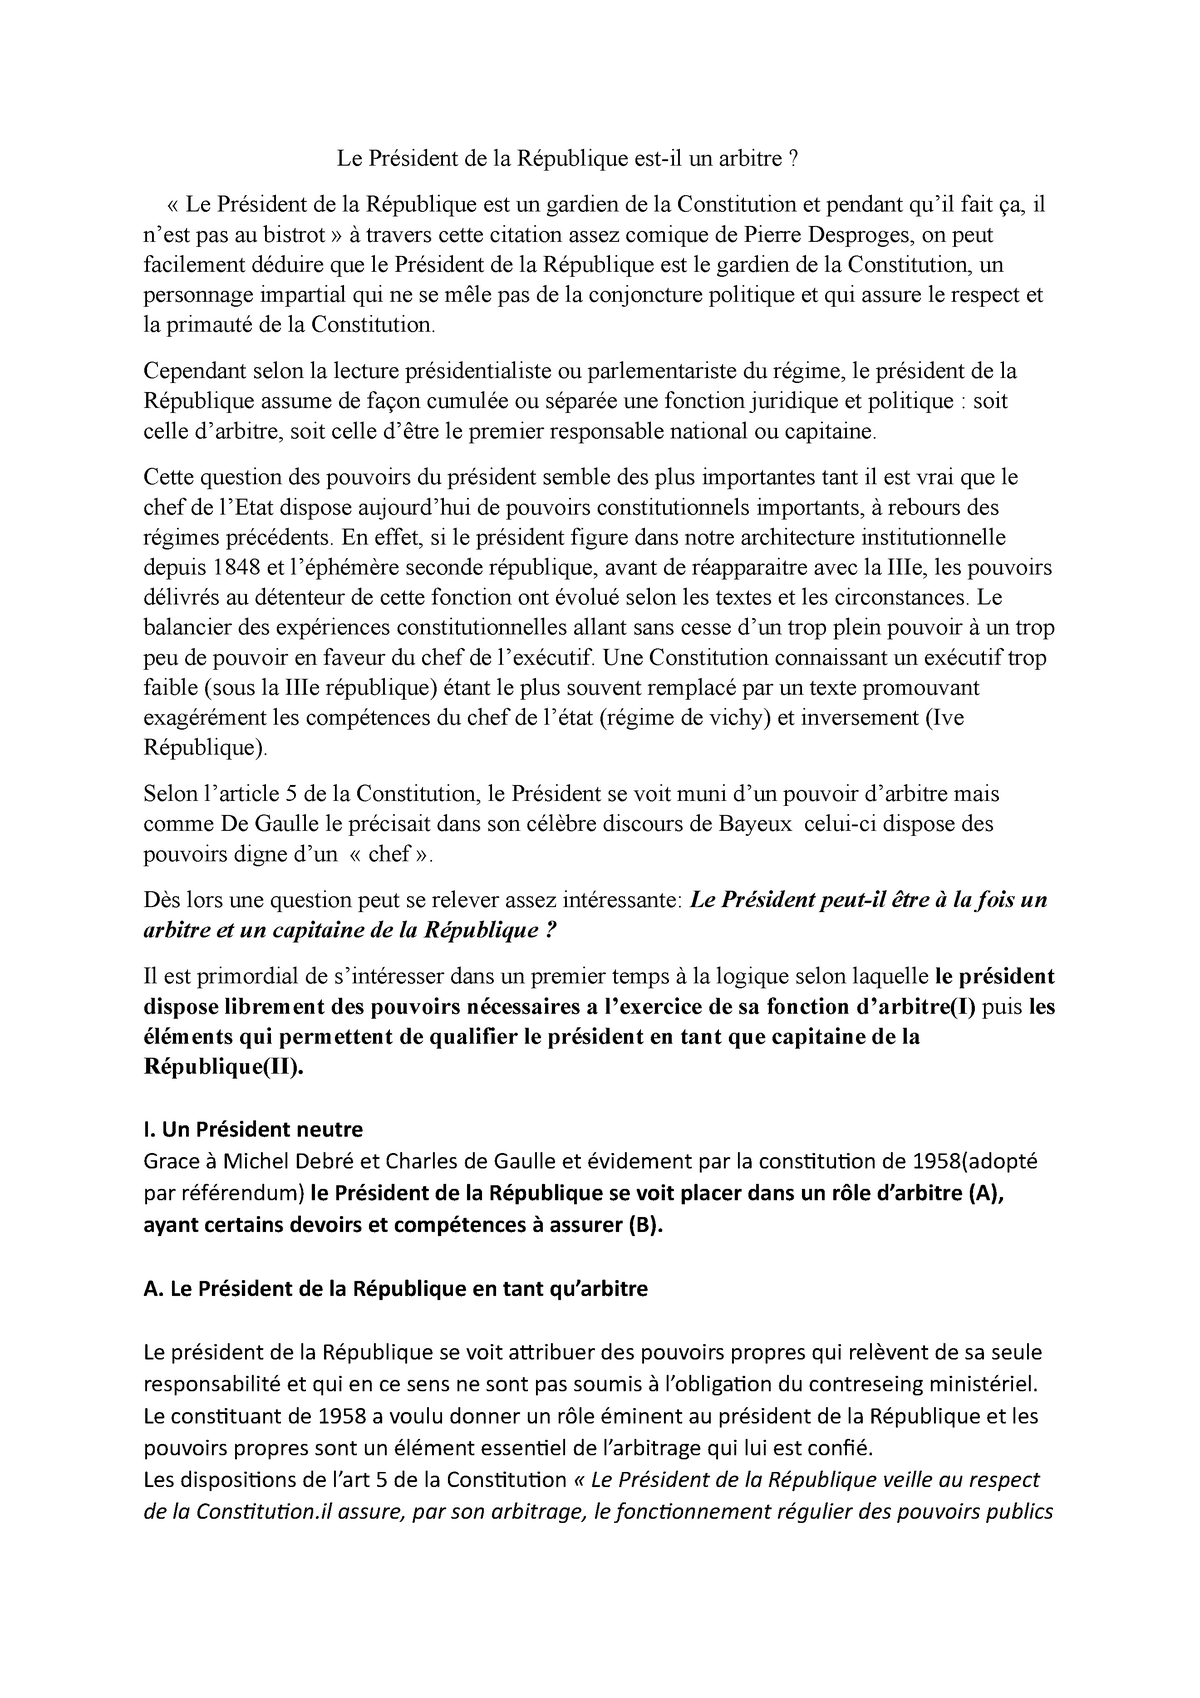 Dissertation President De La Republique Le President De La Republique Est Il Un Arbitre Le Studocu